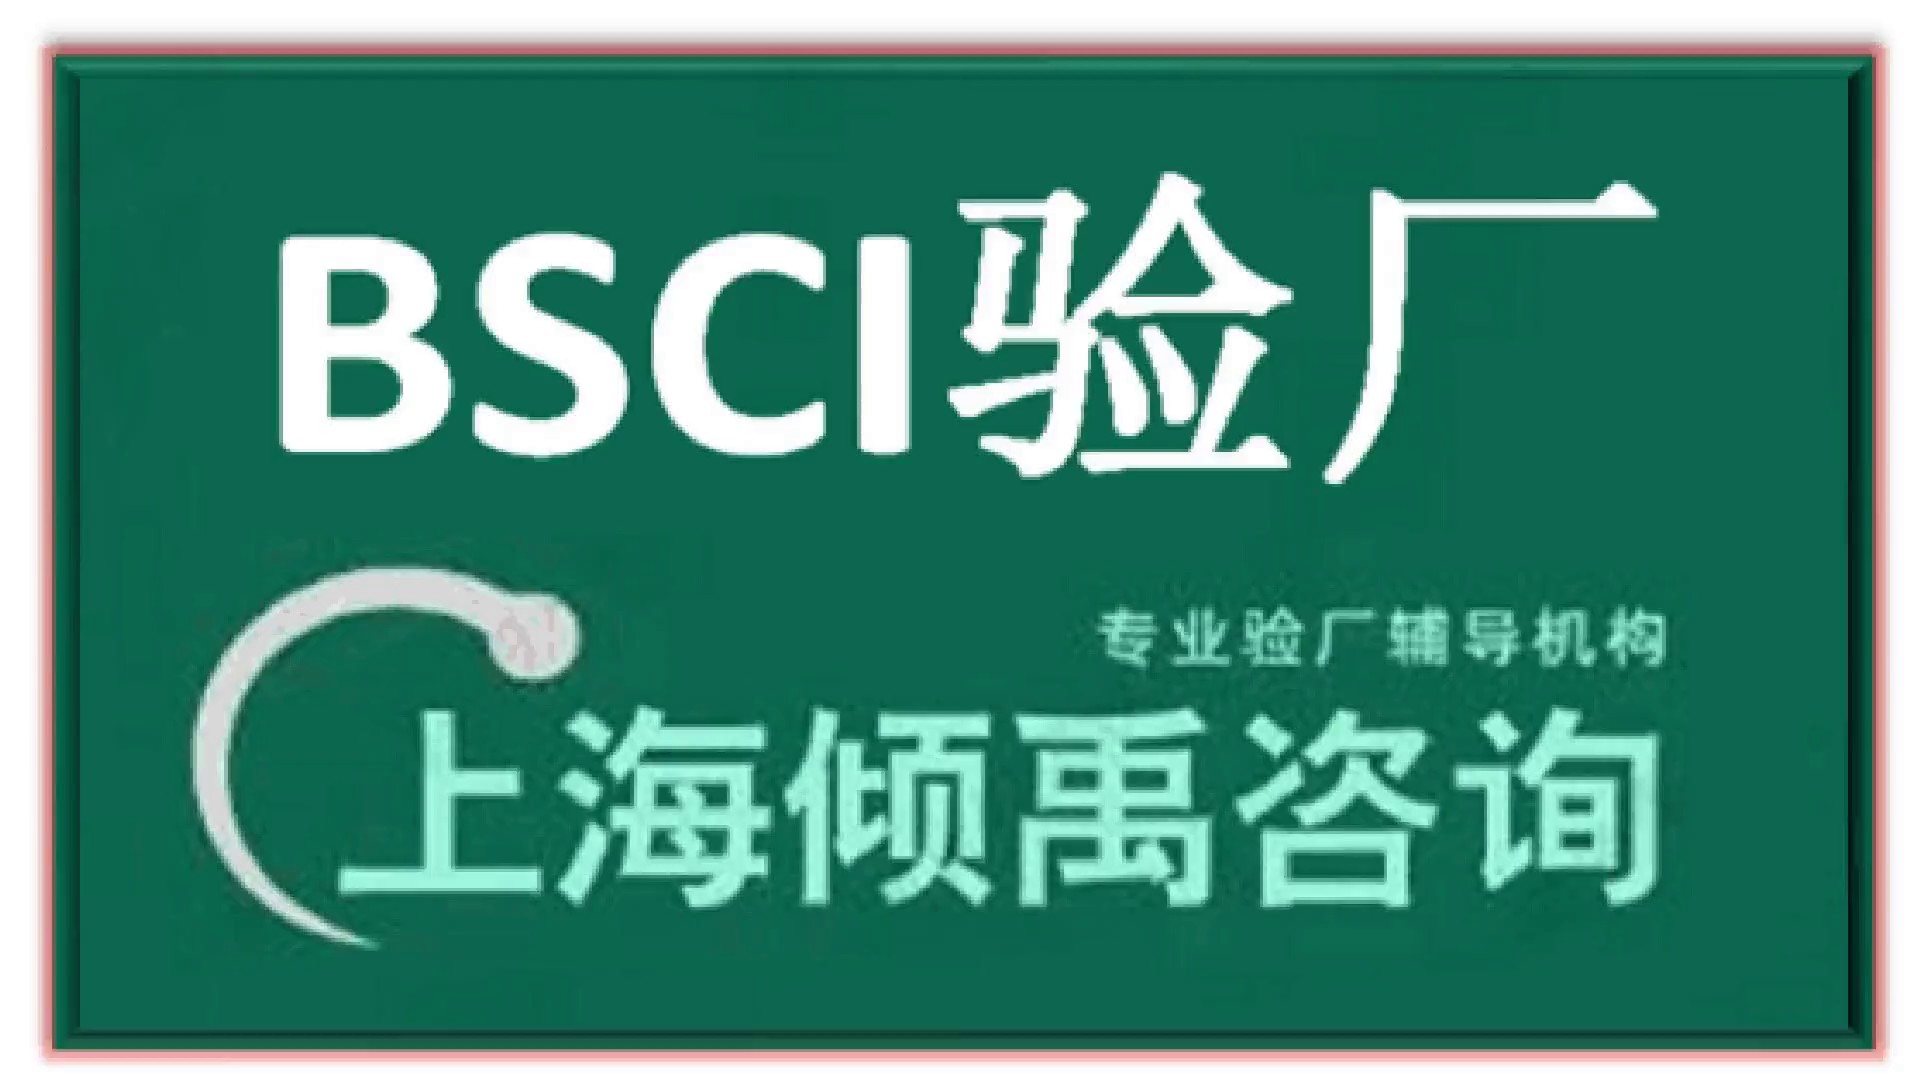 永旺查厂FSC认证BSCI认证顾问公司咨询机构,BSCI认证